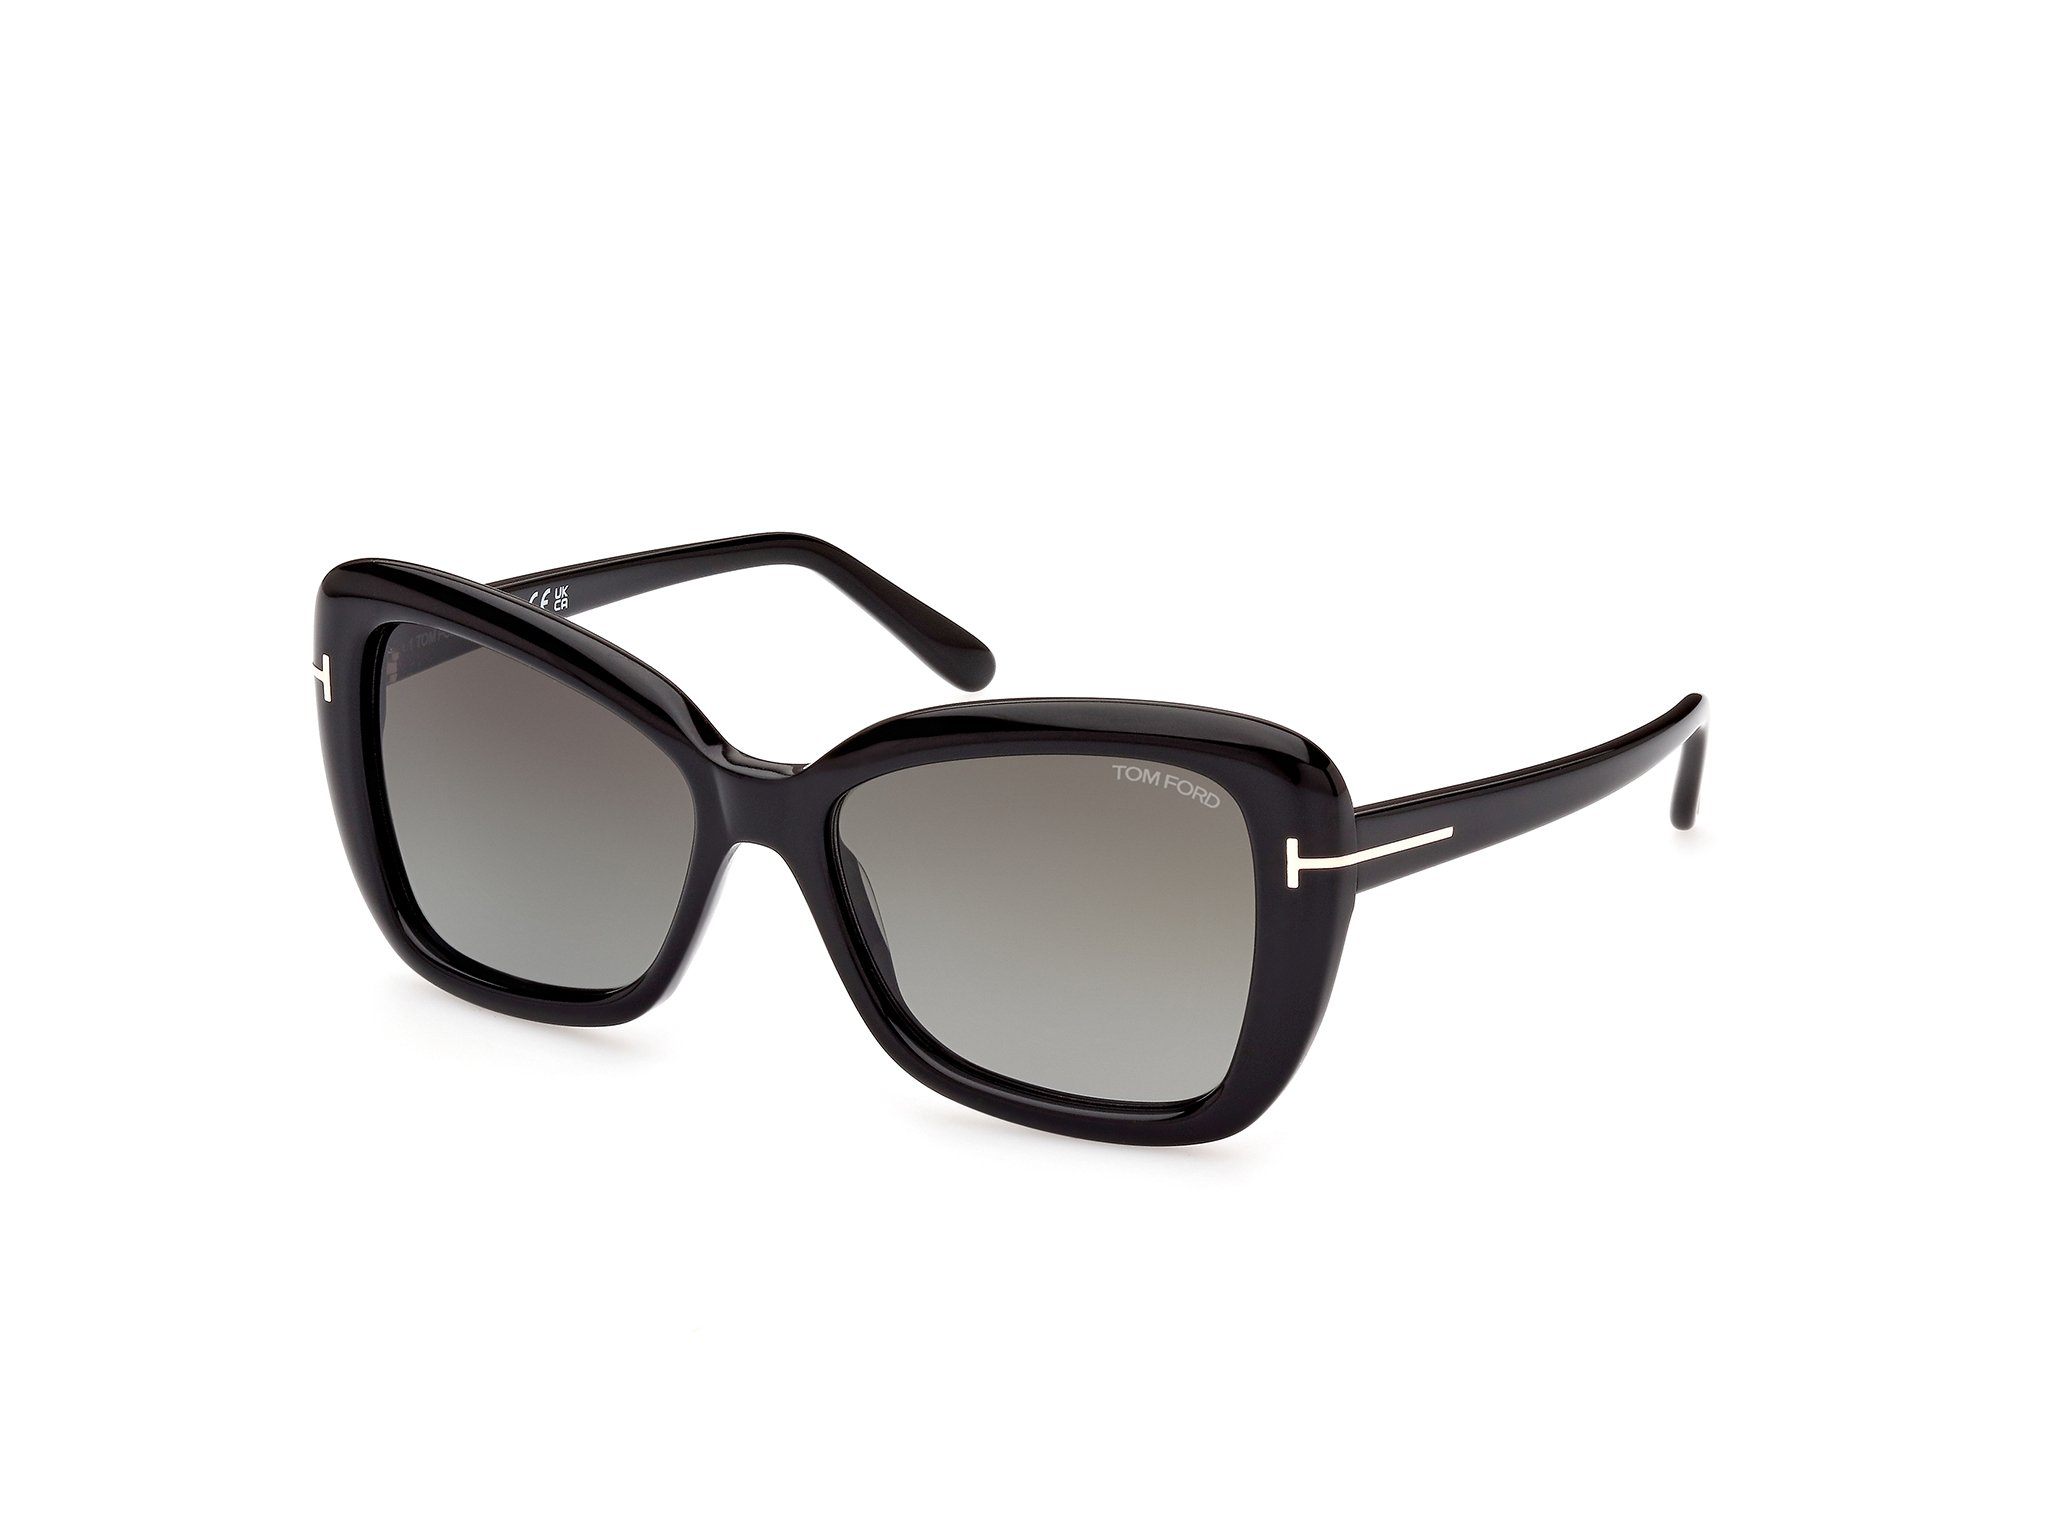 Das Bild zeigt die Sonnenbrille FT1008 der Marke Tom Ford in schwarz von der Seite.